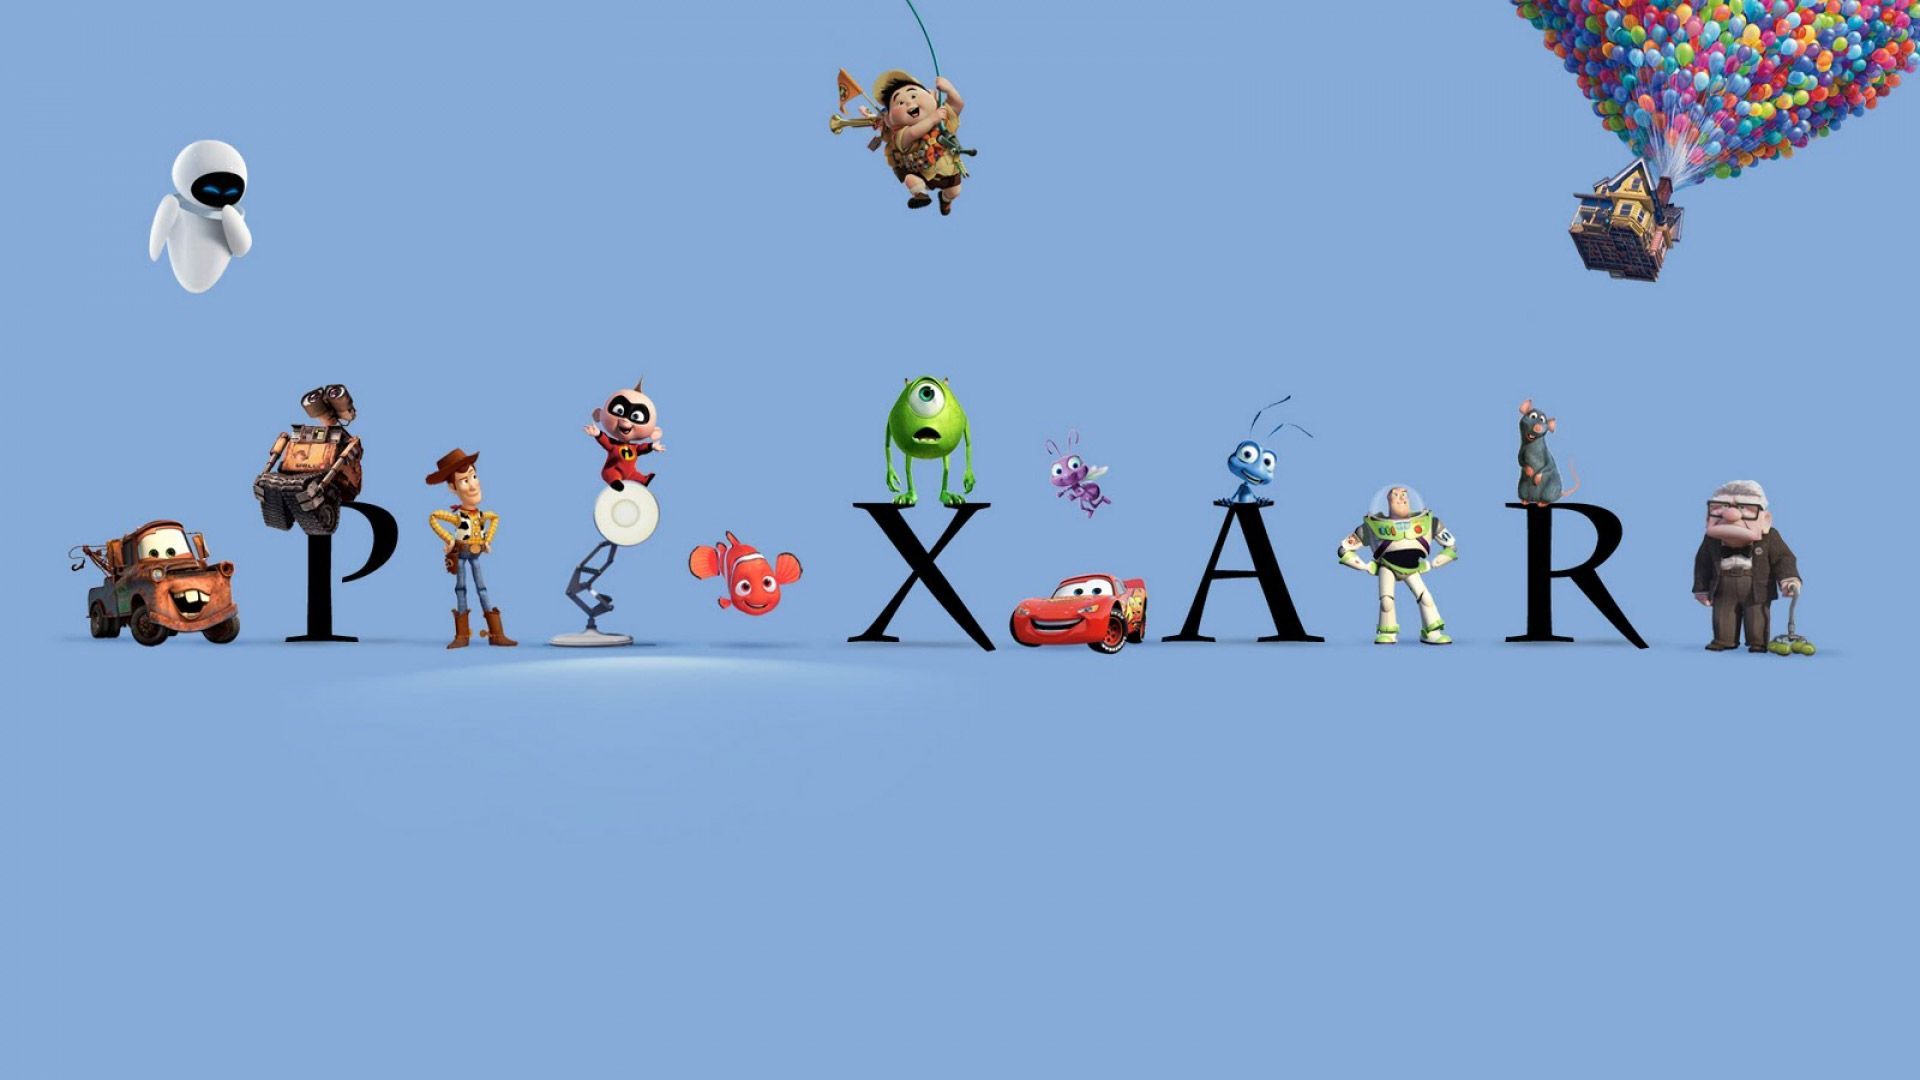 Pixar Logo Wallpaper Free Pixar Logo Background